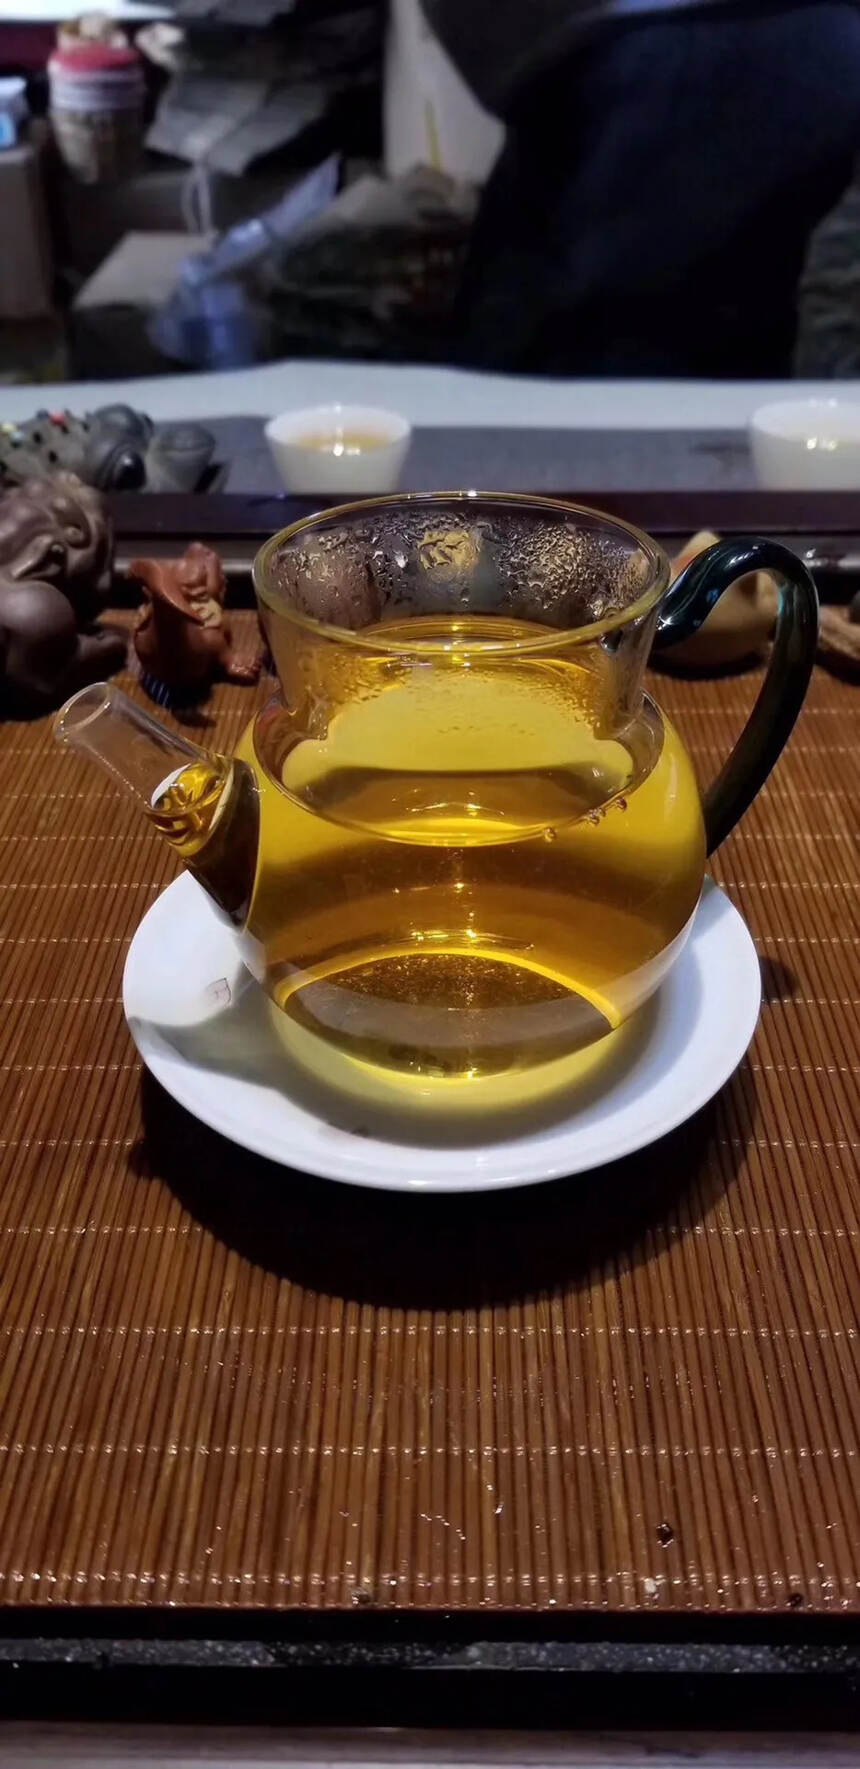 自己存的一款2016年龙珠白茶 。#茶生活# #广州